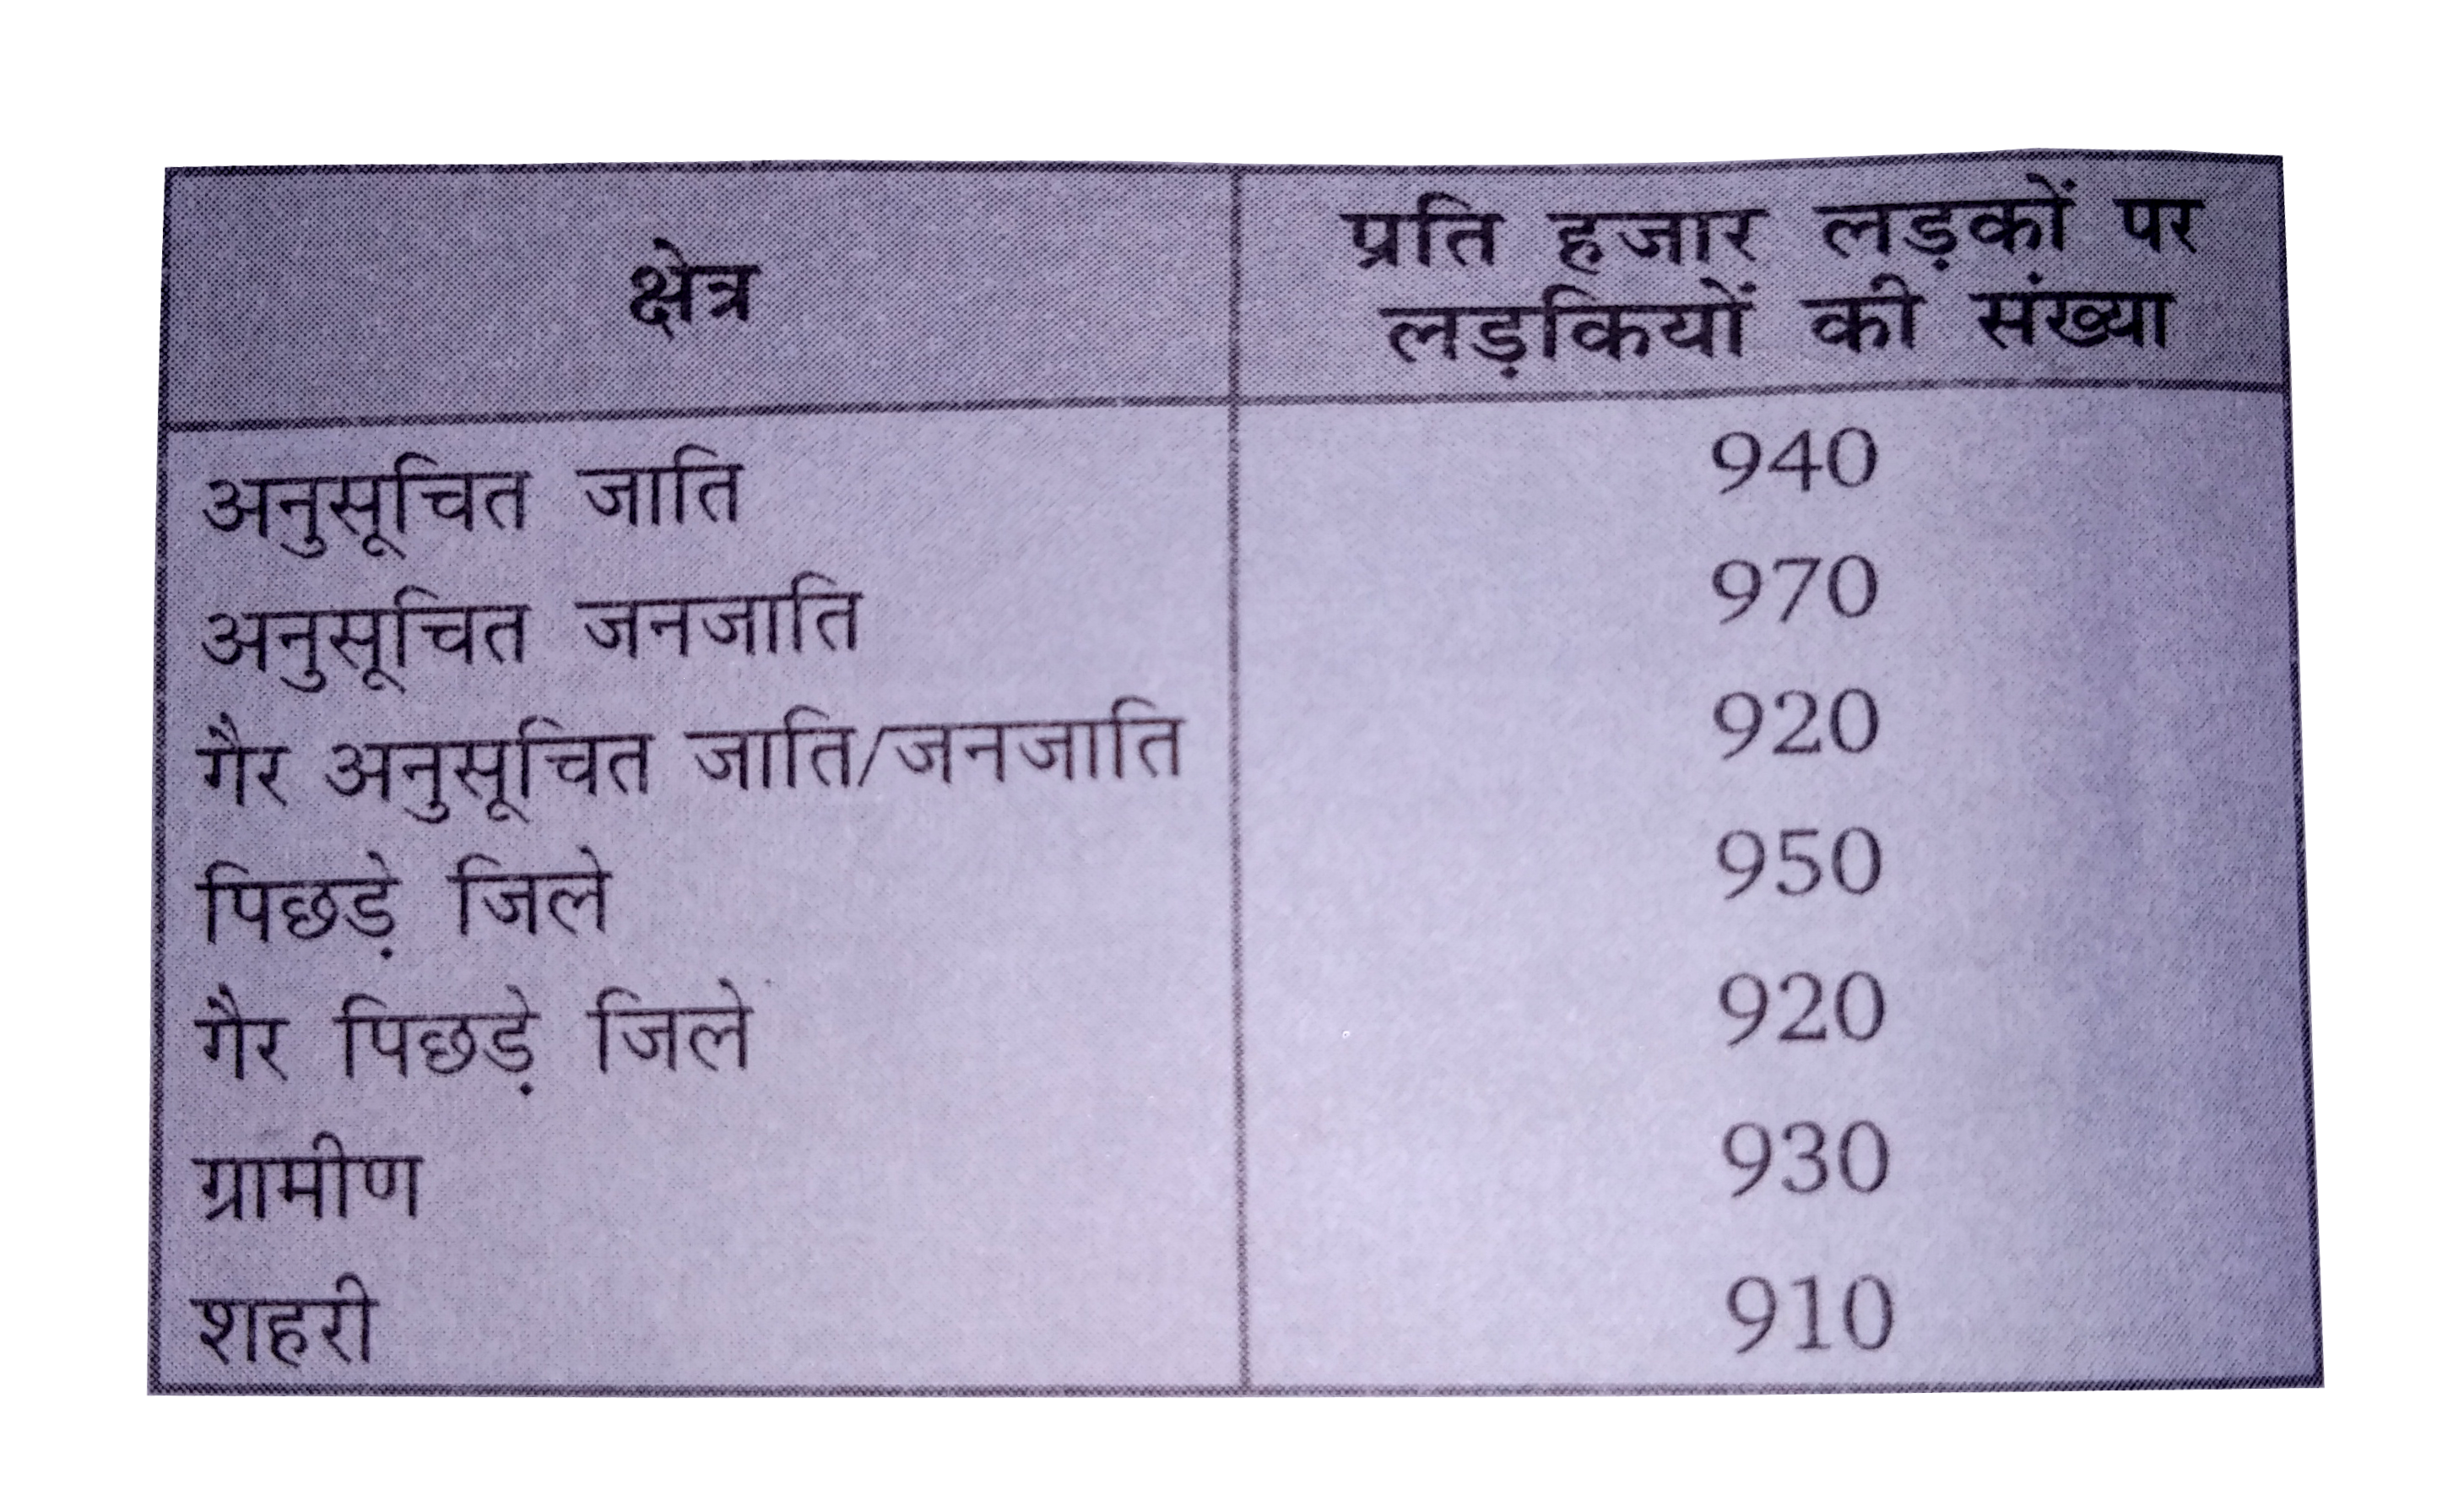 भारतीय समाज के विभिन्न क्षेत्रों में प्रति हजार लड़कों पर लड़कियों की (निकटतम दस तक की) संख्या के आँकड़े नीचे दिए गए हैं :      (i) ऊपर दी गई सूचनाओं को एक दंड आलेख द्वारा निरूपित कीजिए।   (ii) कक्षा में चर्चा करके बताइए कि आप इस आलेख से कौन-कौन से निष्कर्ष निकाल सकते हैं?